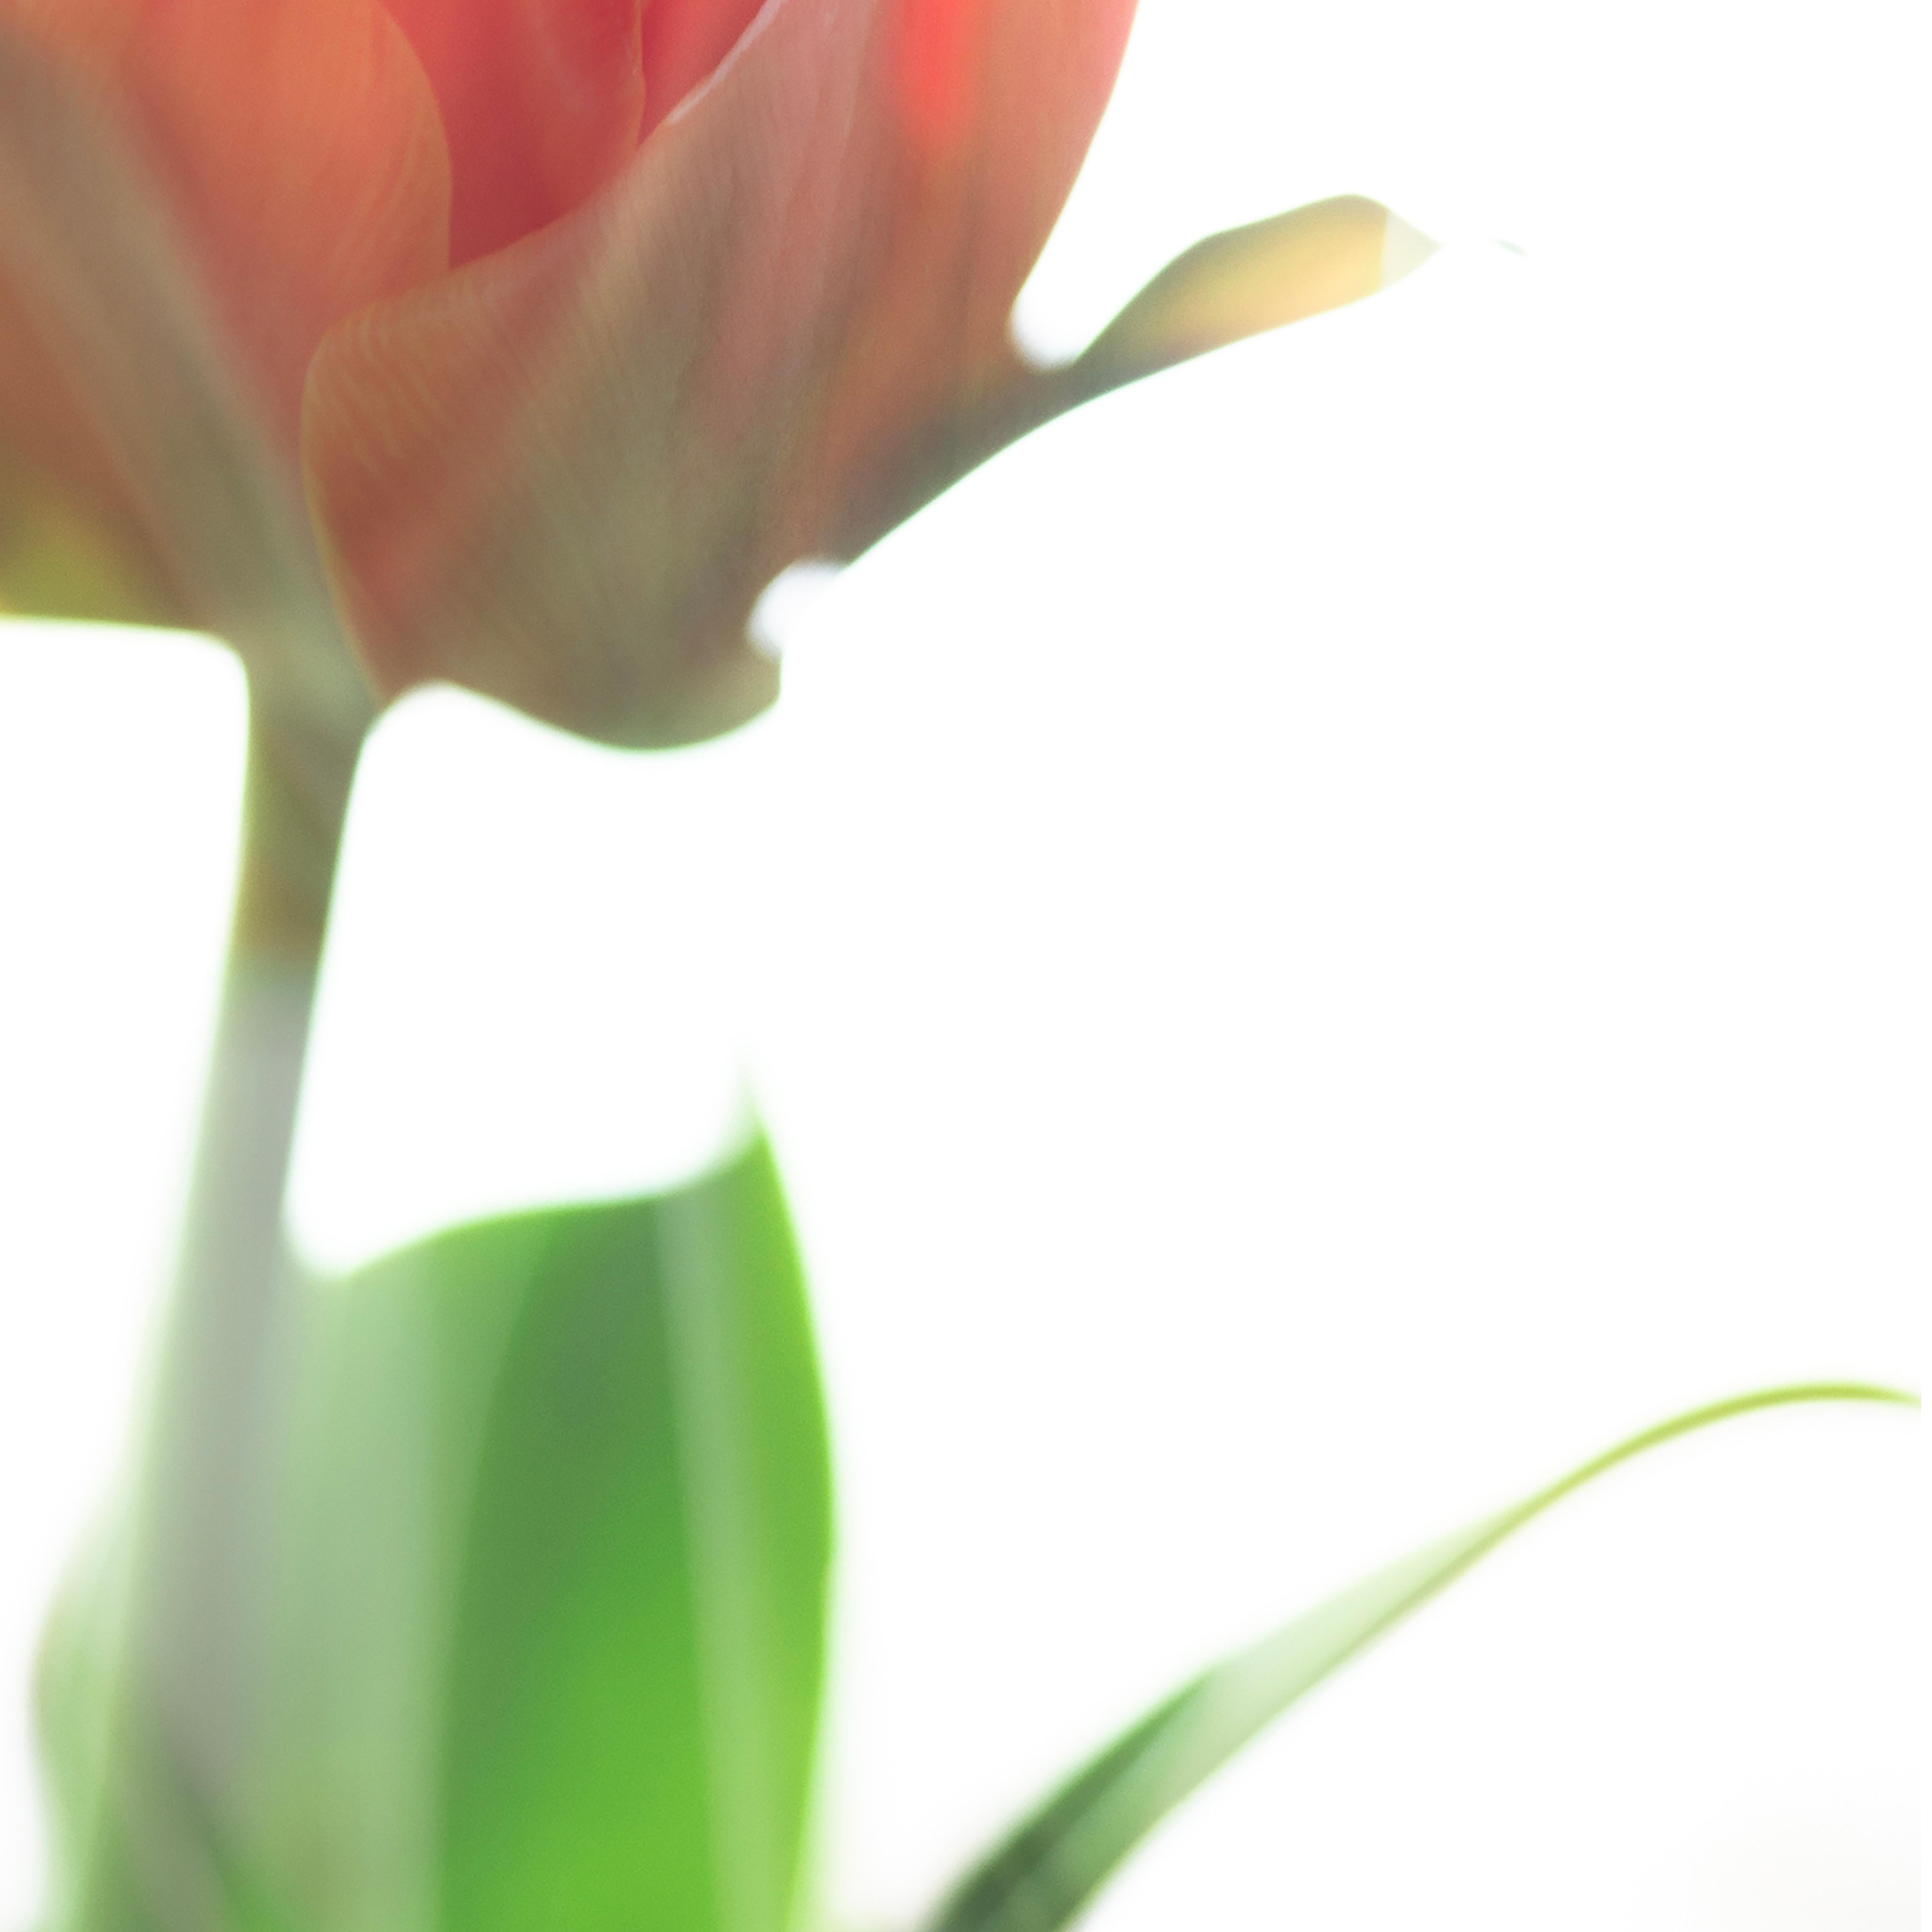 Großformatige Fotografie „Tulip Awakening“ kühne Blume Pastellrot Orange Weiß (Braun), Color Photograph, von Sophia Milligan